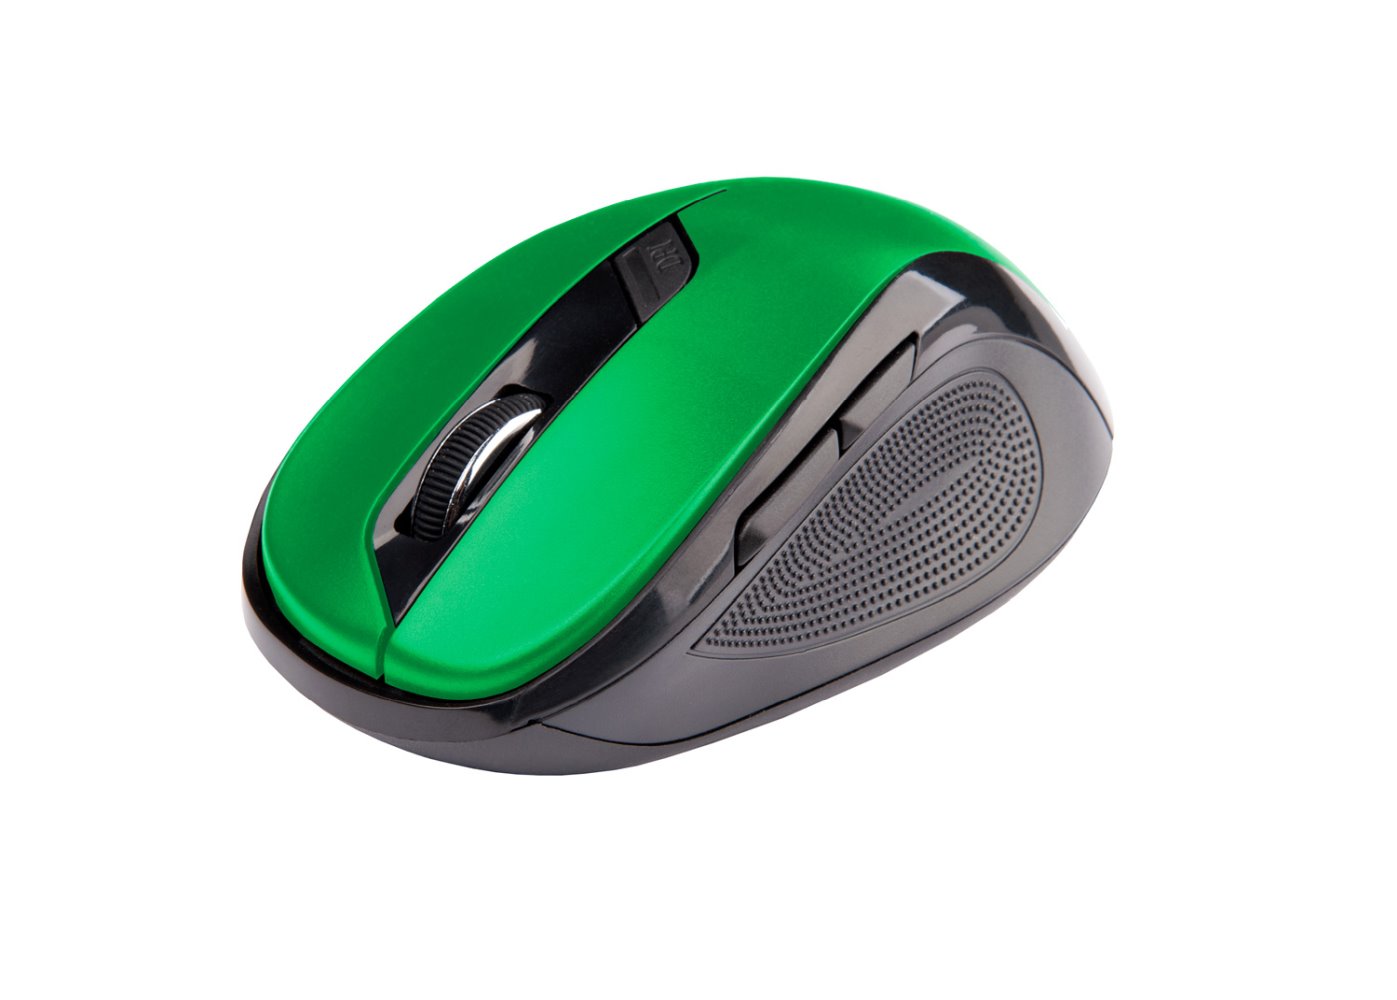 C-Tech WLM-02G myš, černo-zelená, bezdrátová, 1600DPI, 6 tlačítek, USB nano receiver